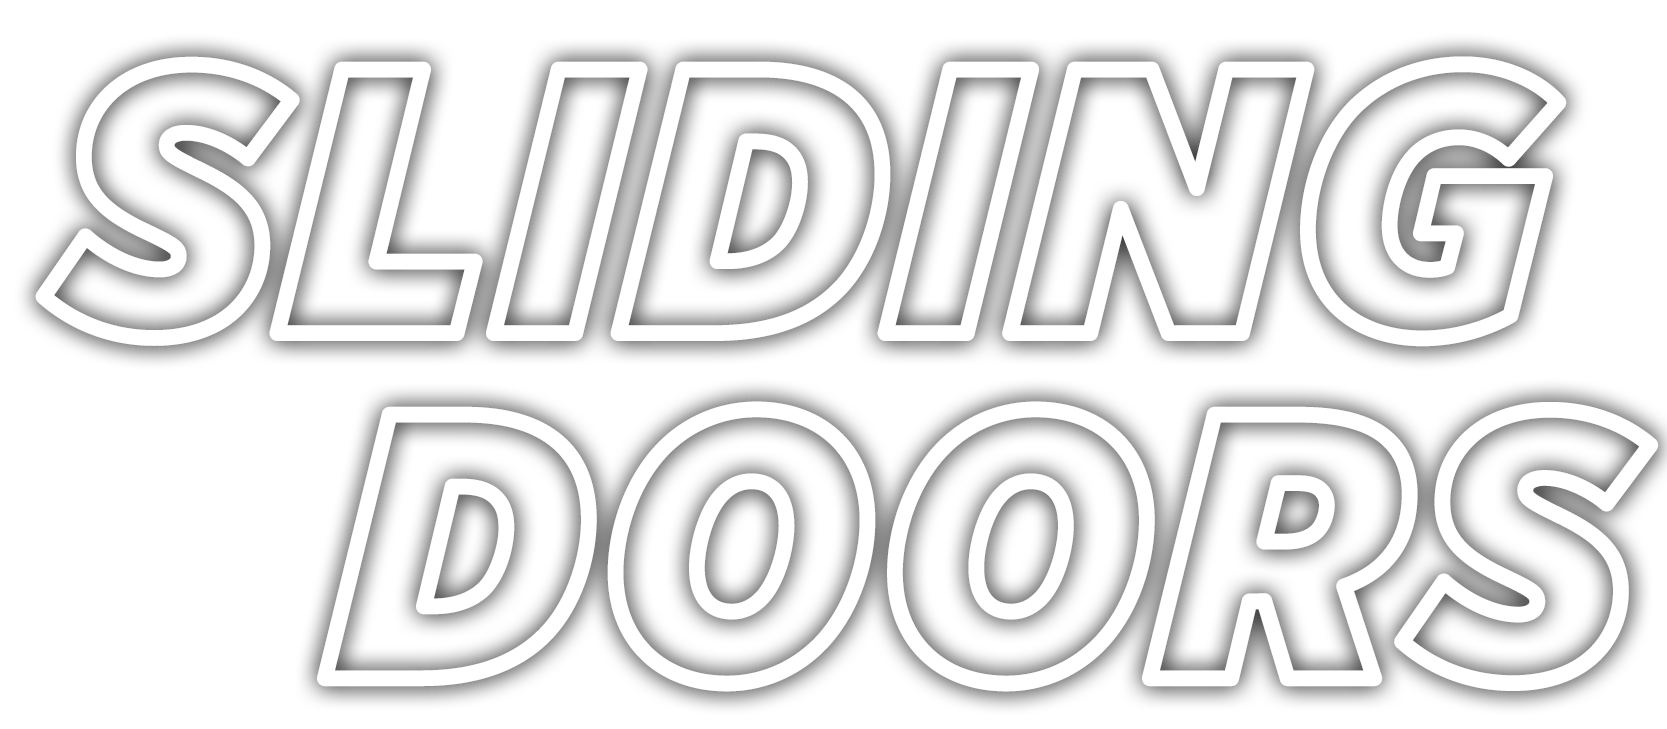 Logo Sliding Doors Trasp